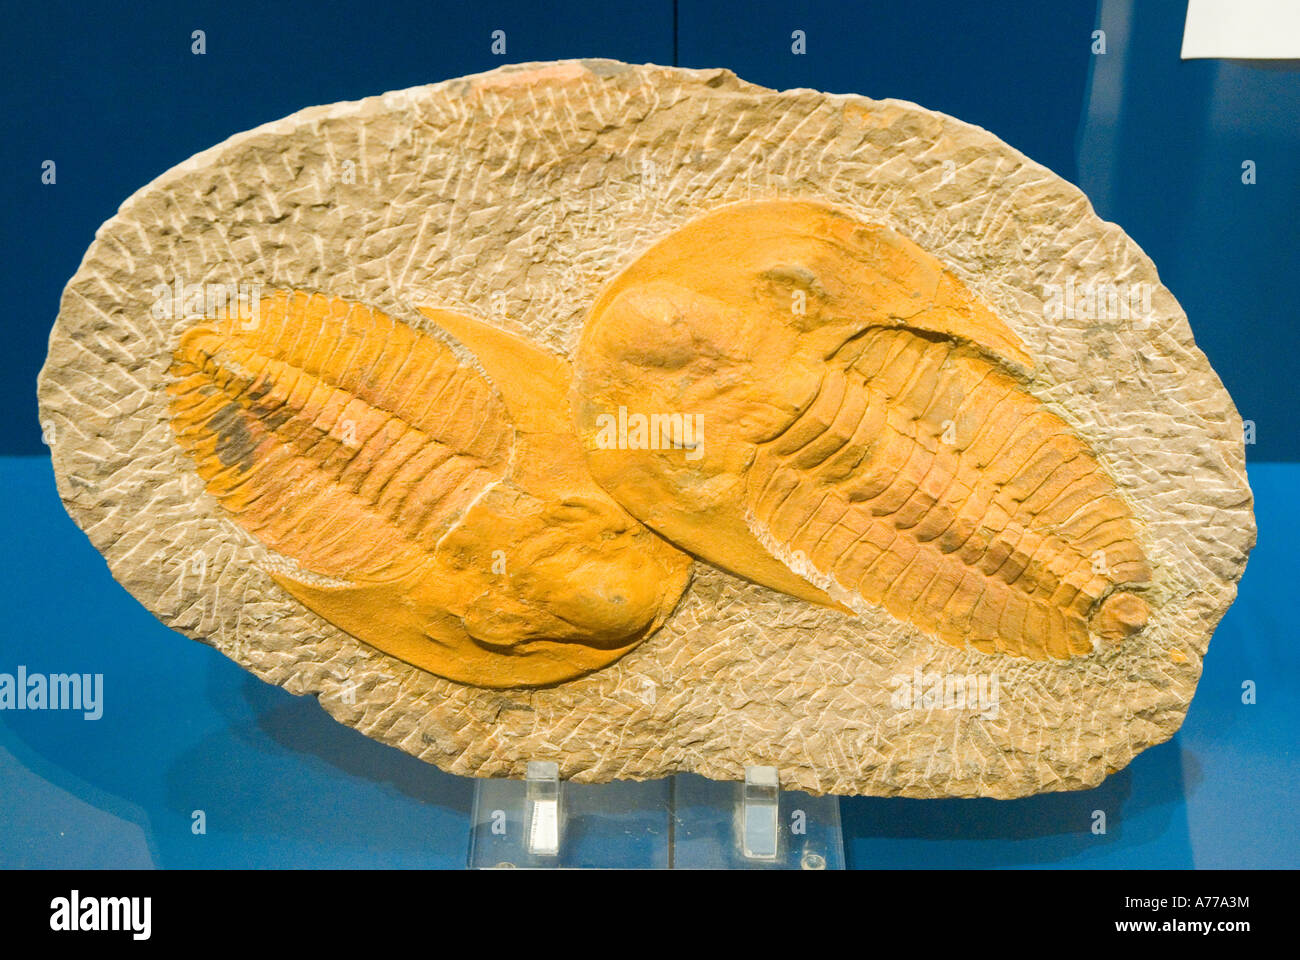 Trilobites Palaeontology Museum ELCHE Alicante province Valencia Autonomous Community Spain Stock Photo